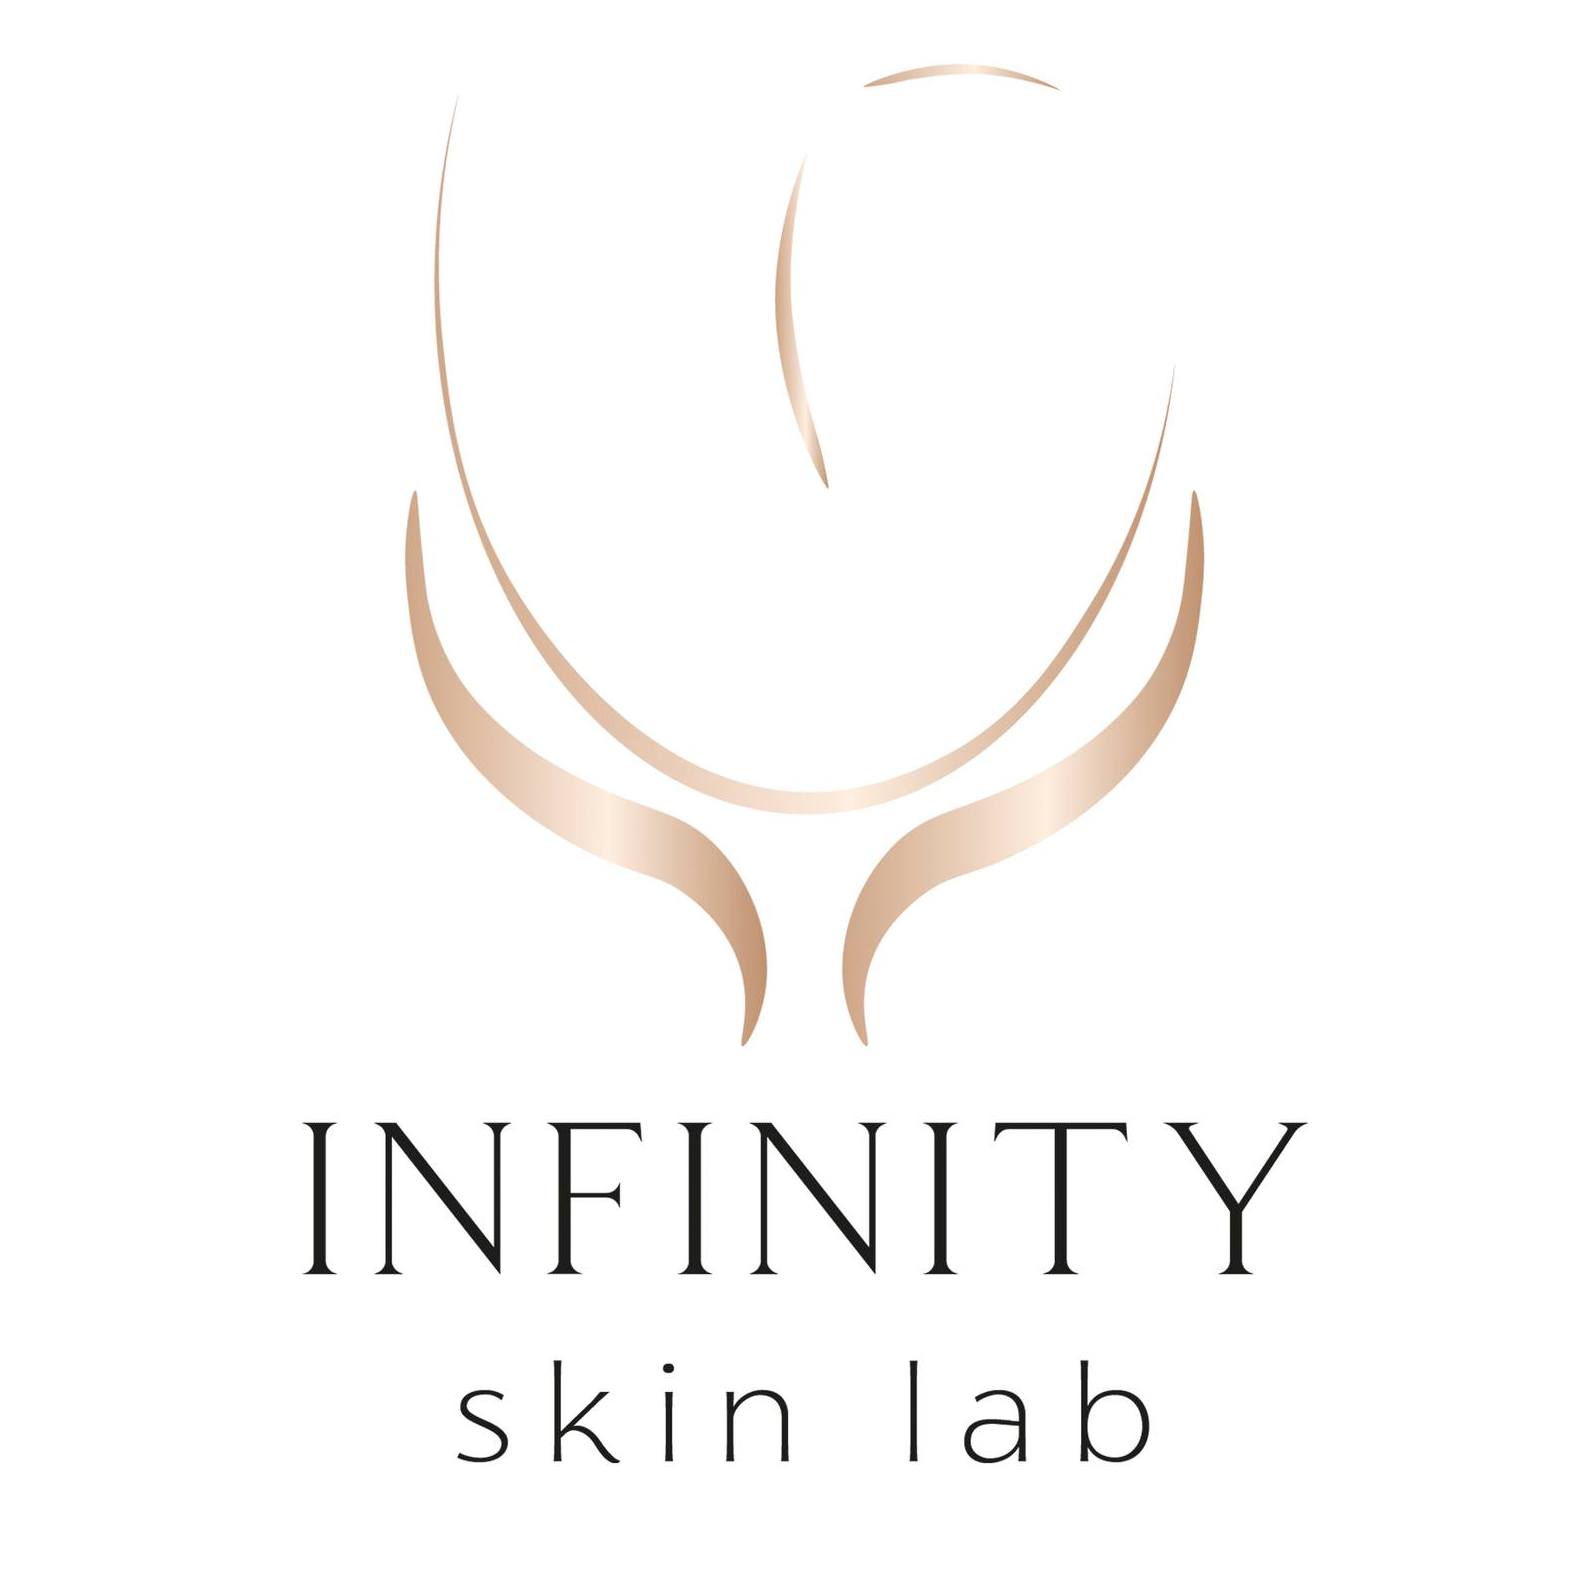 Infinity Skinlab